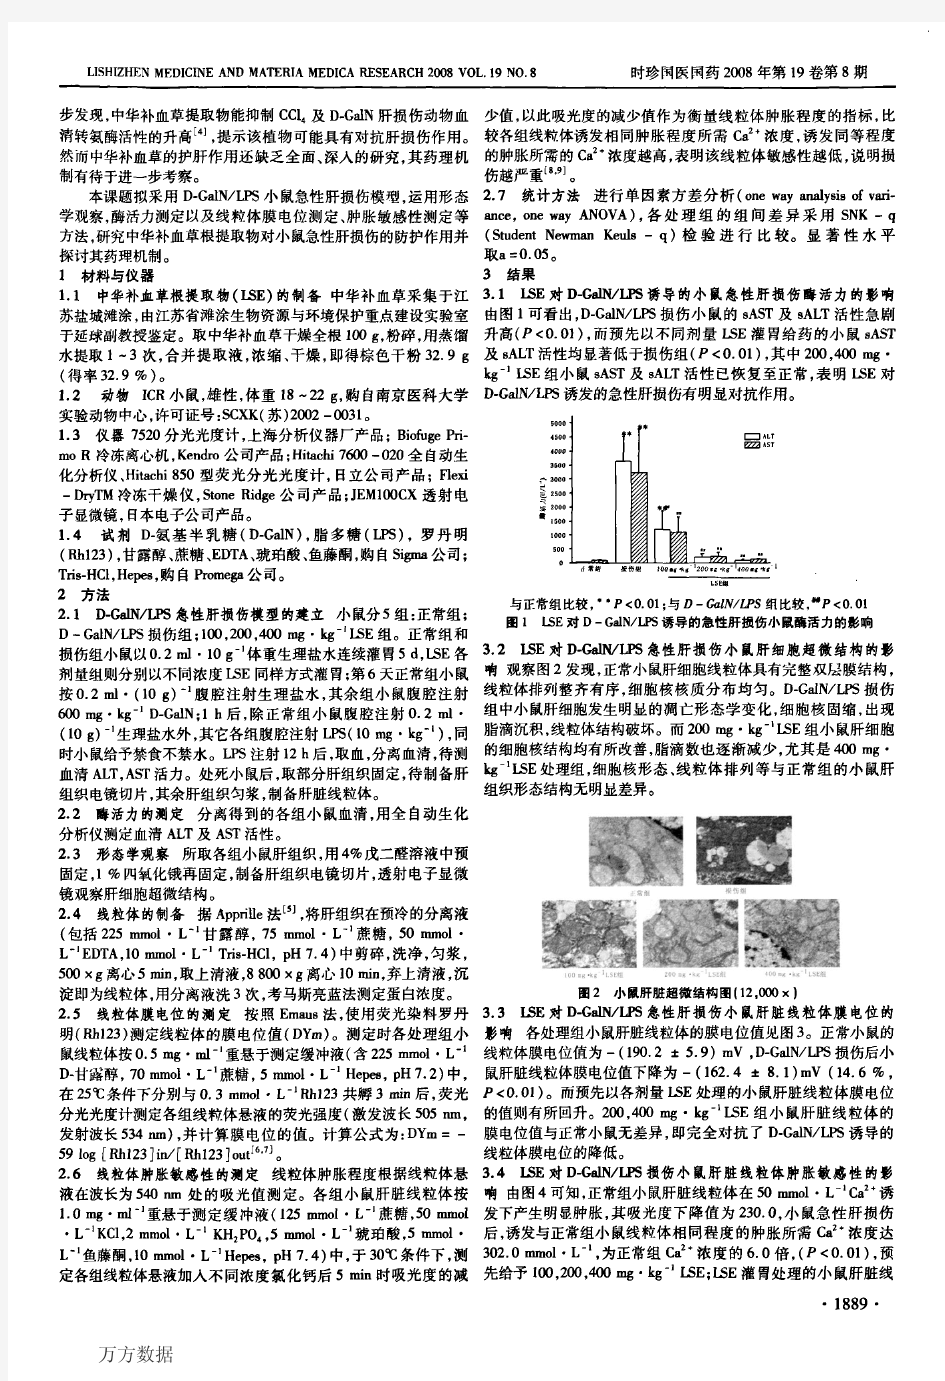 中华补血草根提取物对D-GalN_LPS肝损伤的防护作用